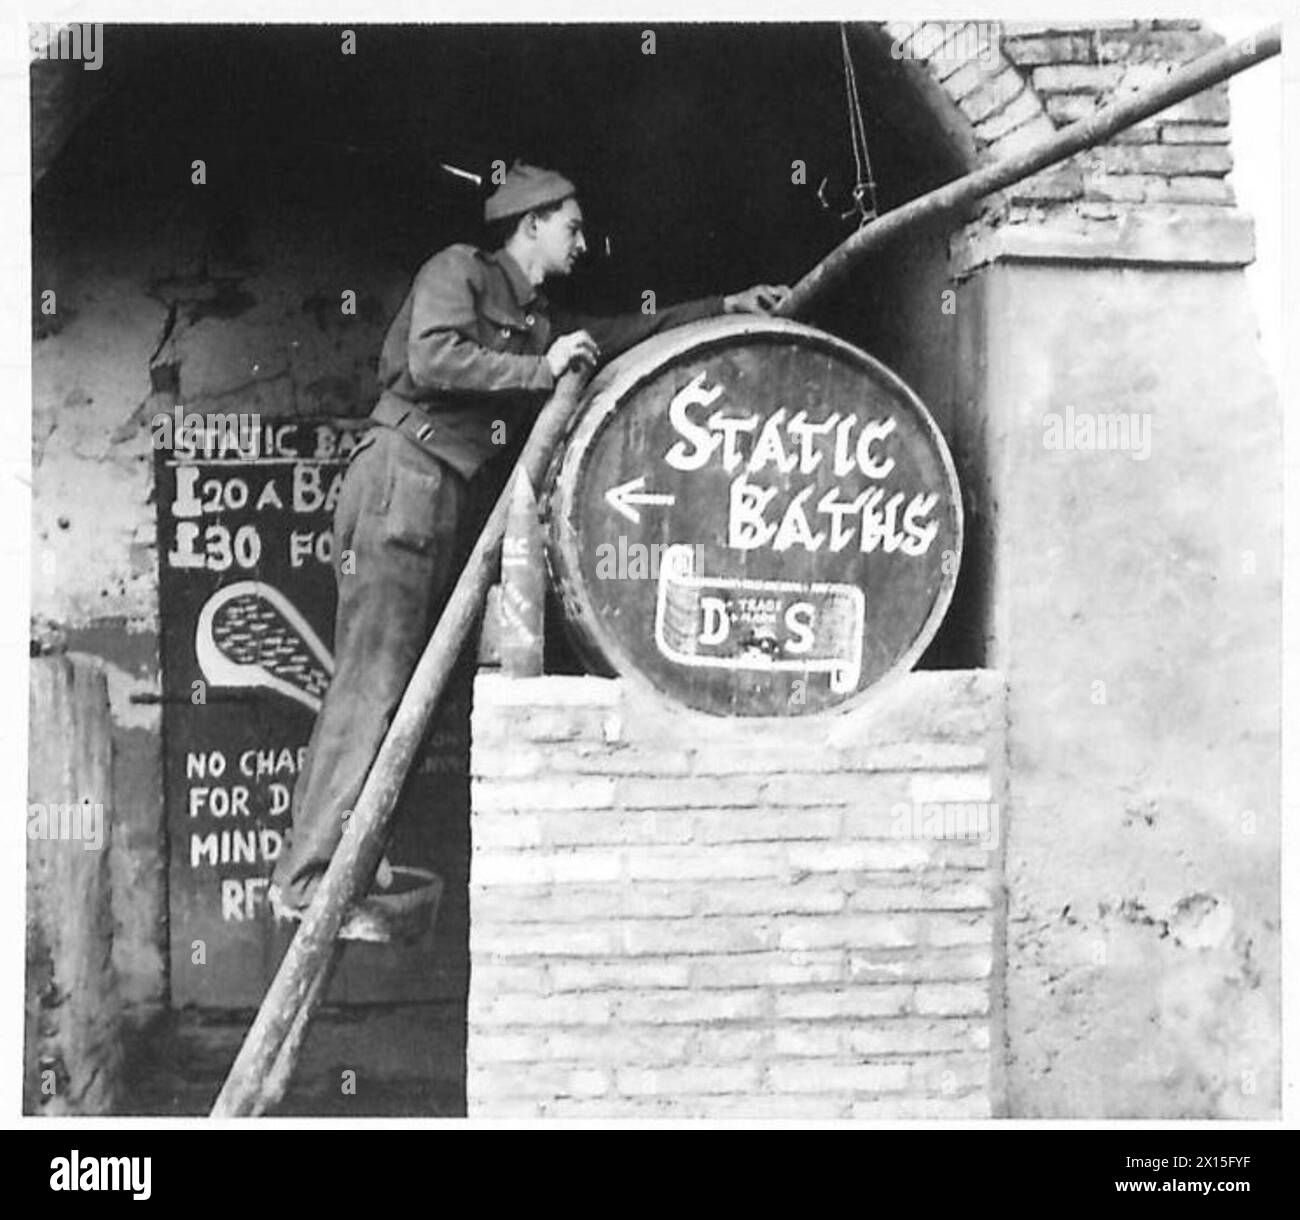 L'ARMÉE BRITANNIQUE EN AFRIQUE DU NORD, EN SICILE, EN ITALIE, DANS LES BALKANS ET EN AUTRICHE 1942-1946 - RFN. F. Saunders de 86 Westfield Avenue, Watford, Herts regarde le baril qui est rempli à partir du pipeline aérien menant de la pompe dans la cour de l'armée britannique Banque D'Images